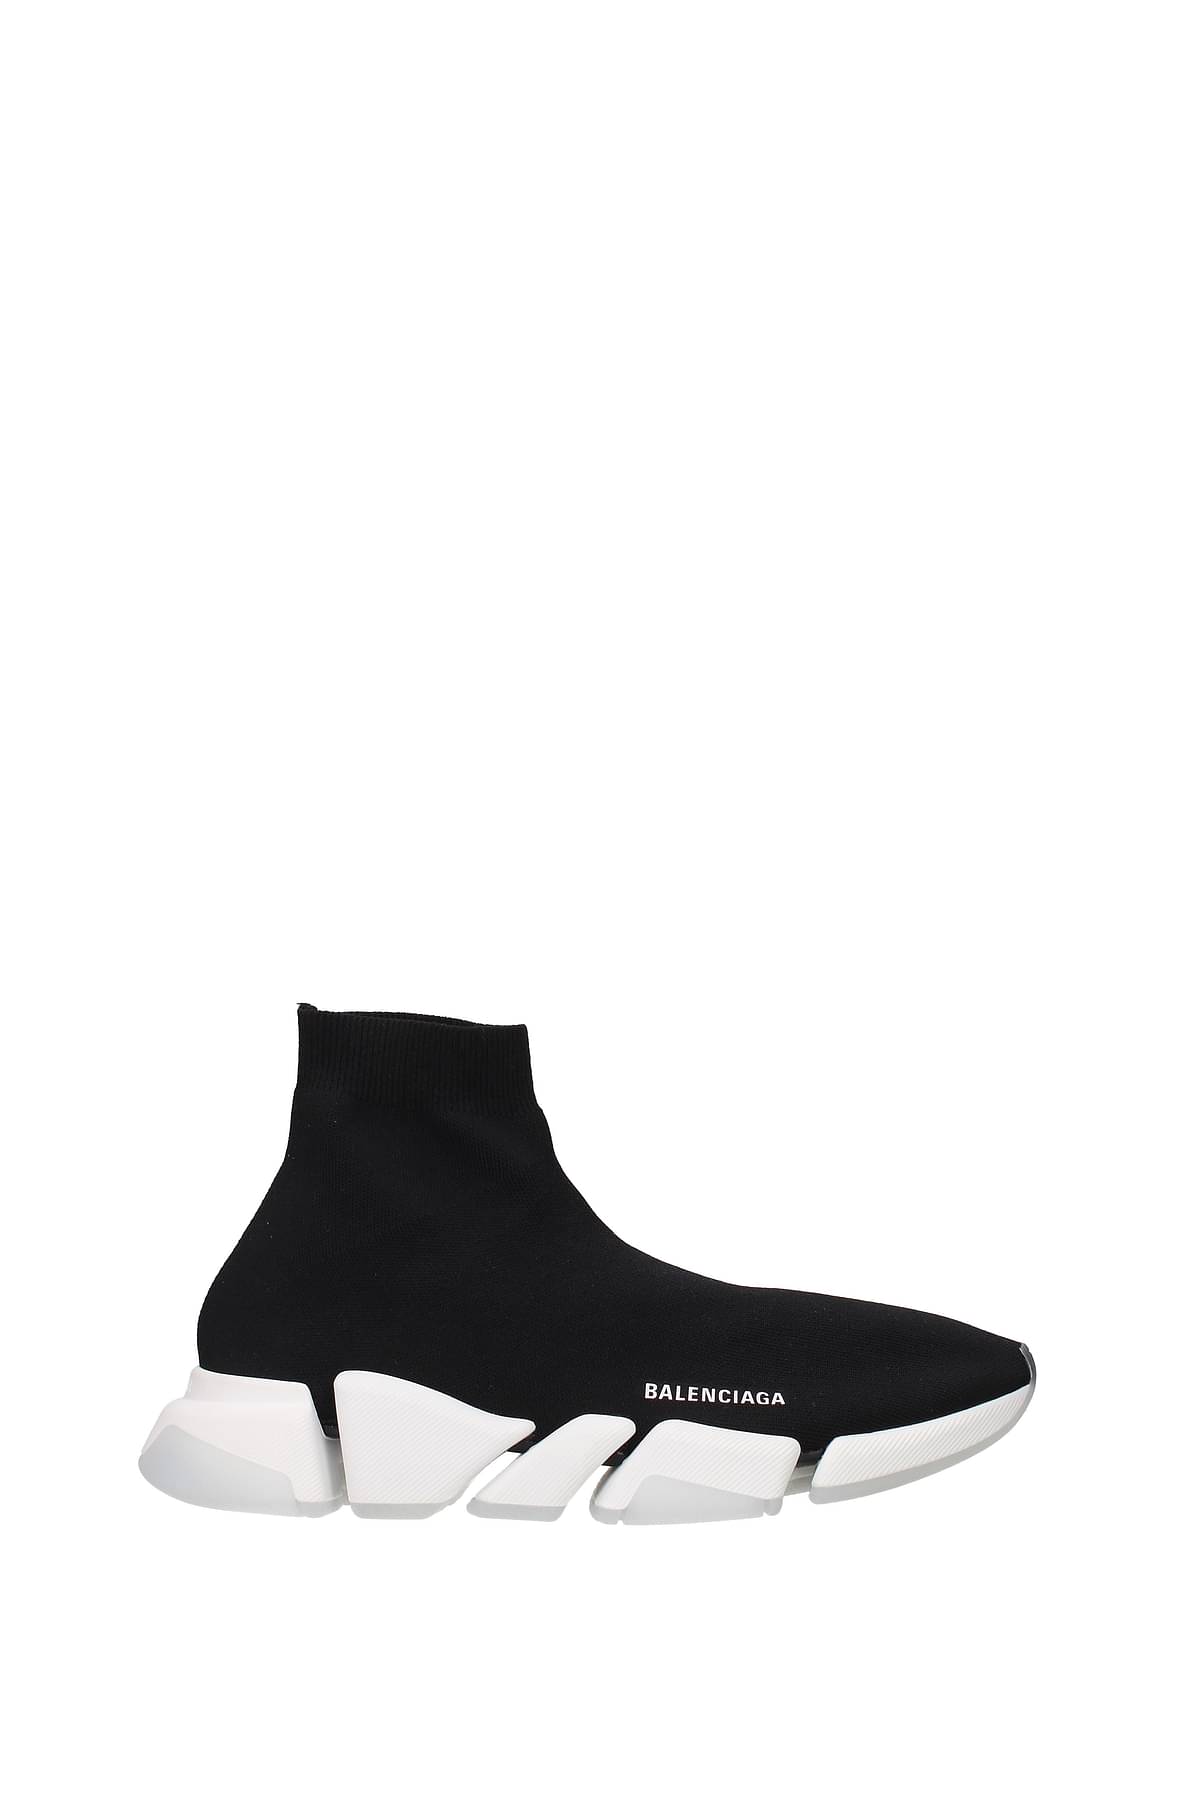 Balenciaga Sneakers speed 2.0 Men 654020W2DI21091 Fabric Black 701,25€